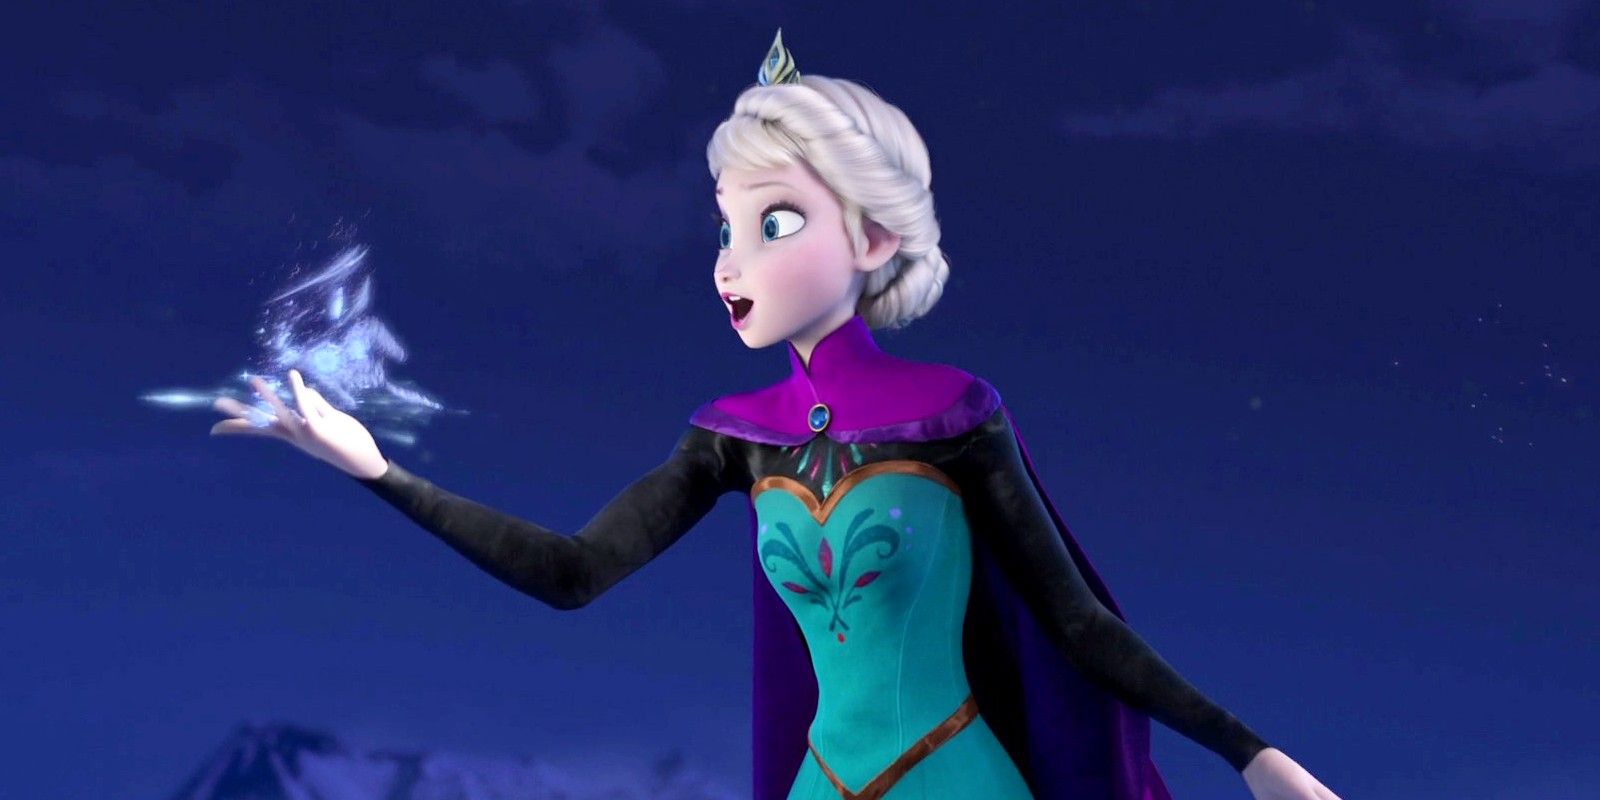 Elsa creating ice in Frozen